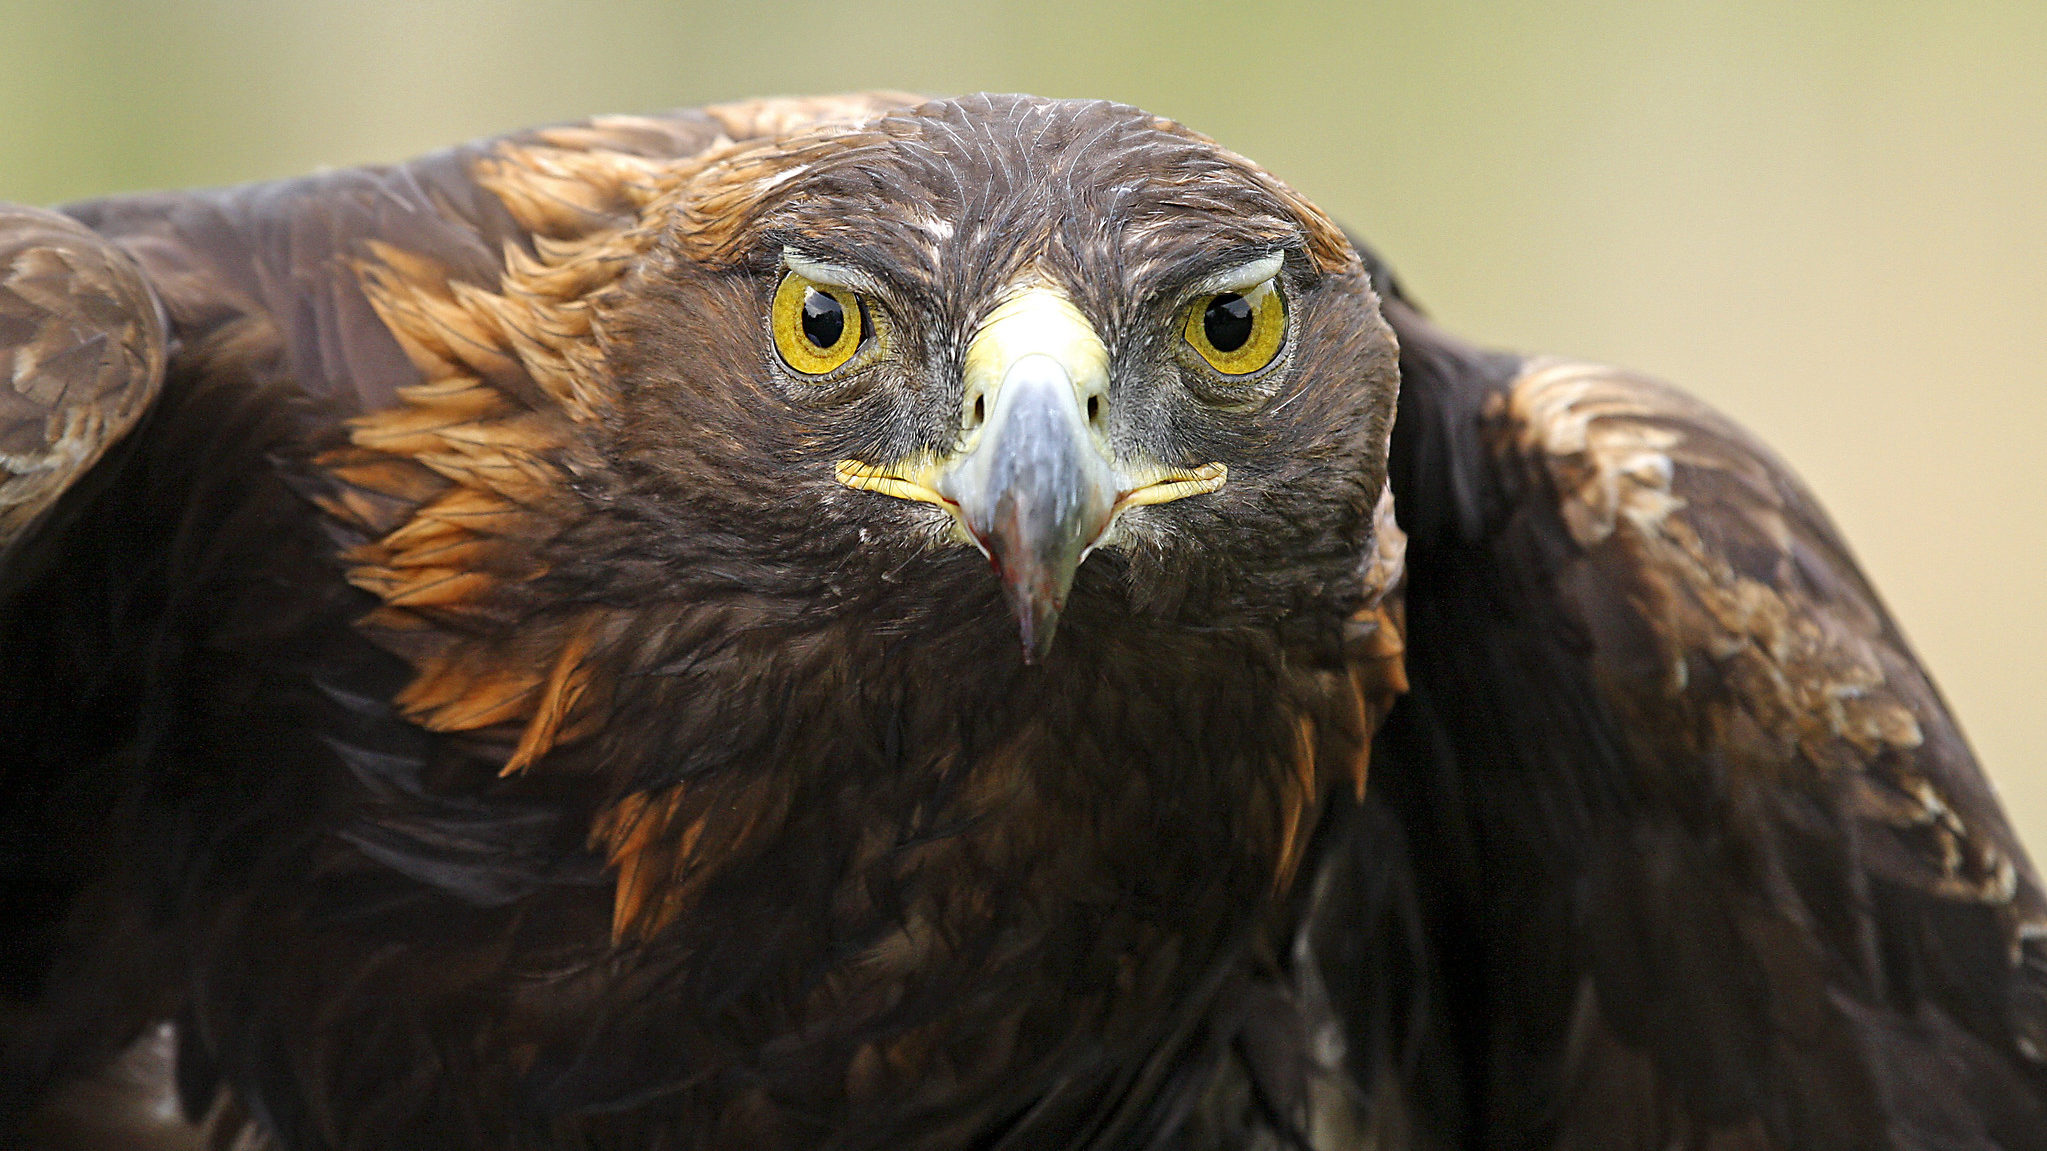 A golden eagle headshot